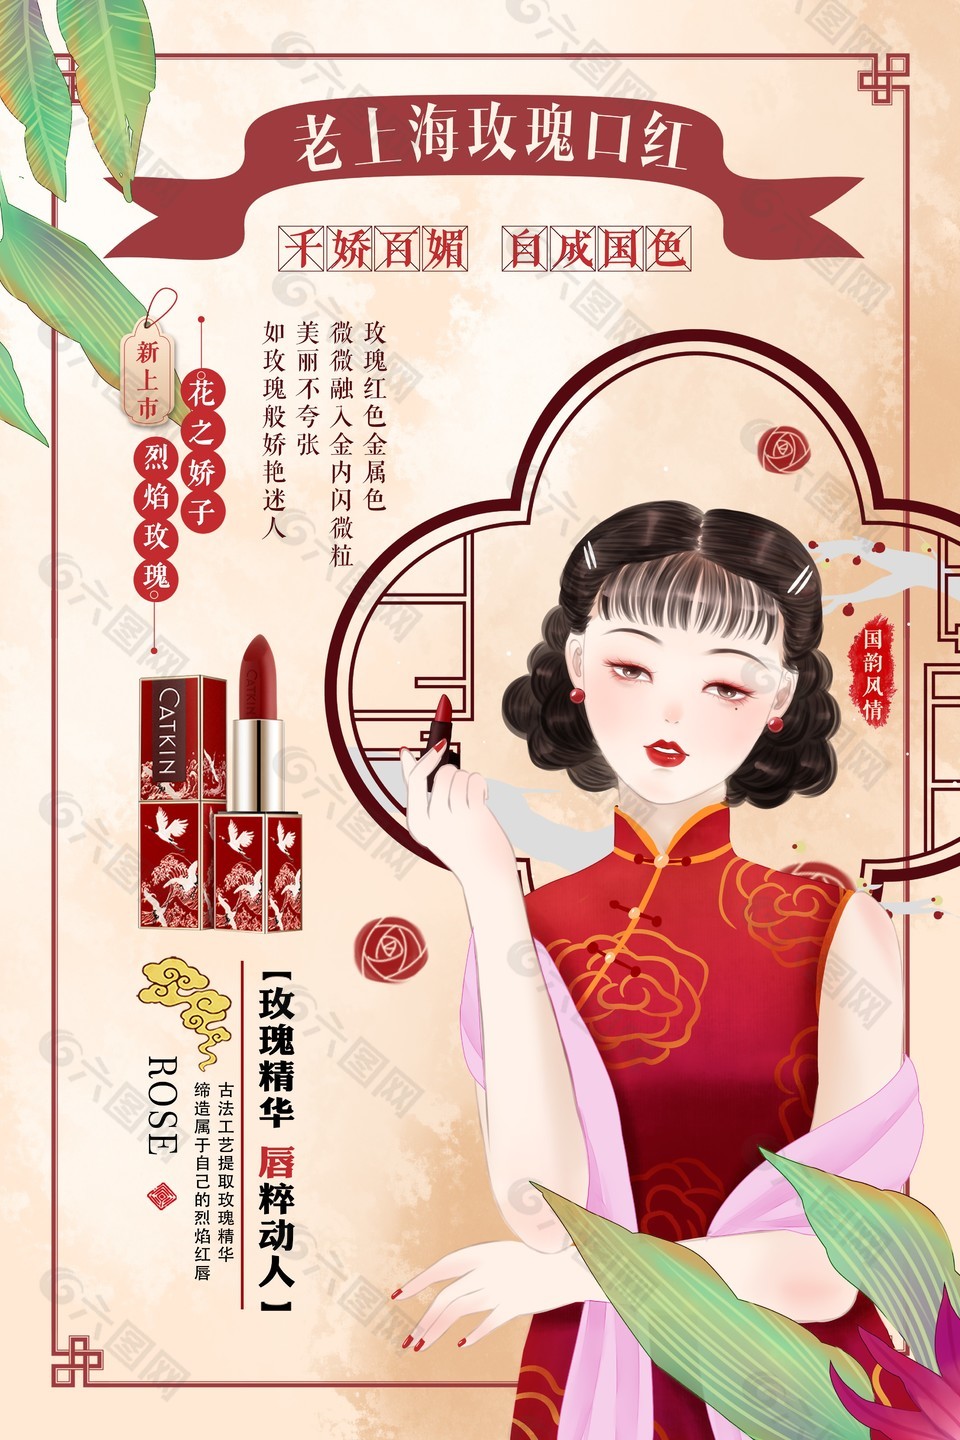 老上海玫瑰口红创意人物插画海报